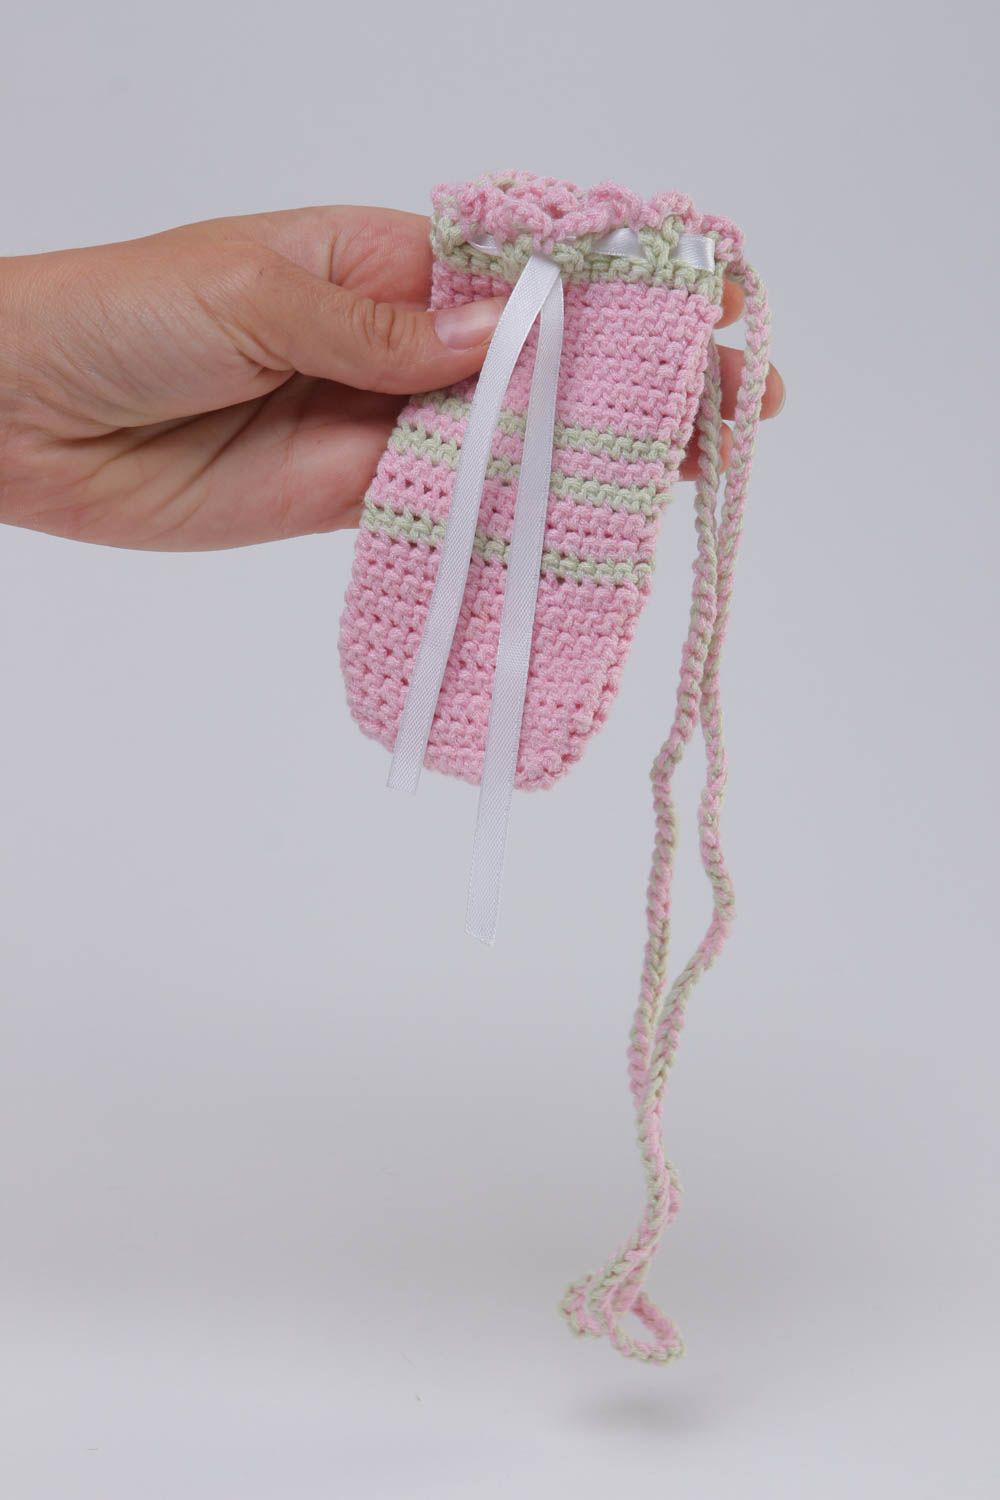 Beautiful handmade crochet phone case gadget accessories crochet ideas photo 5